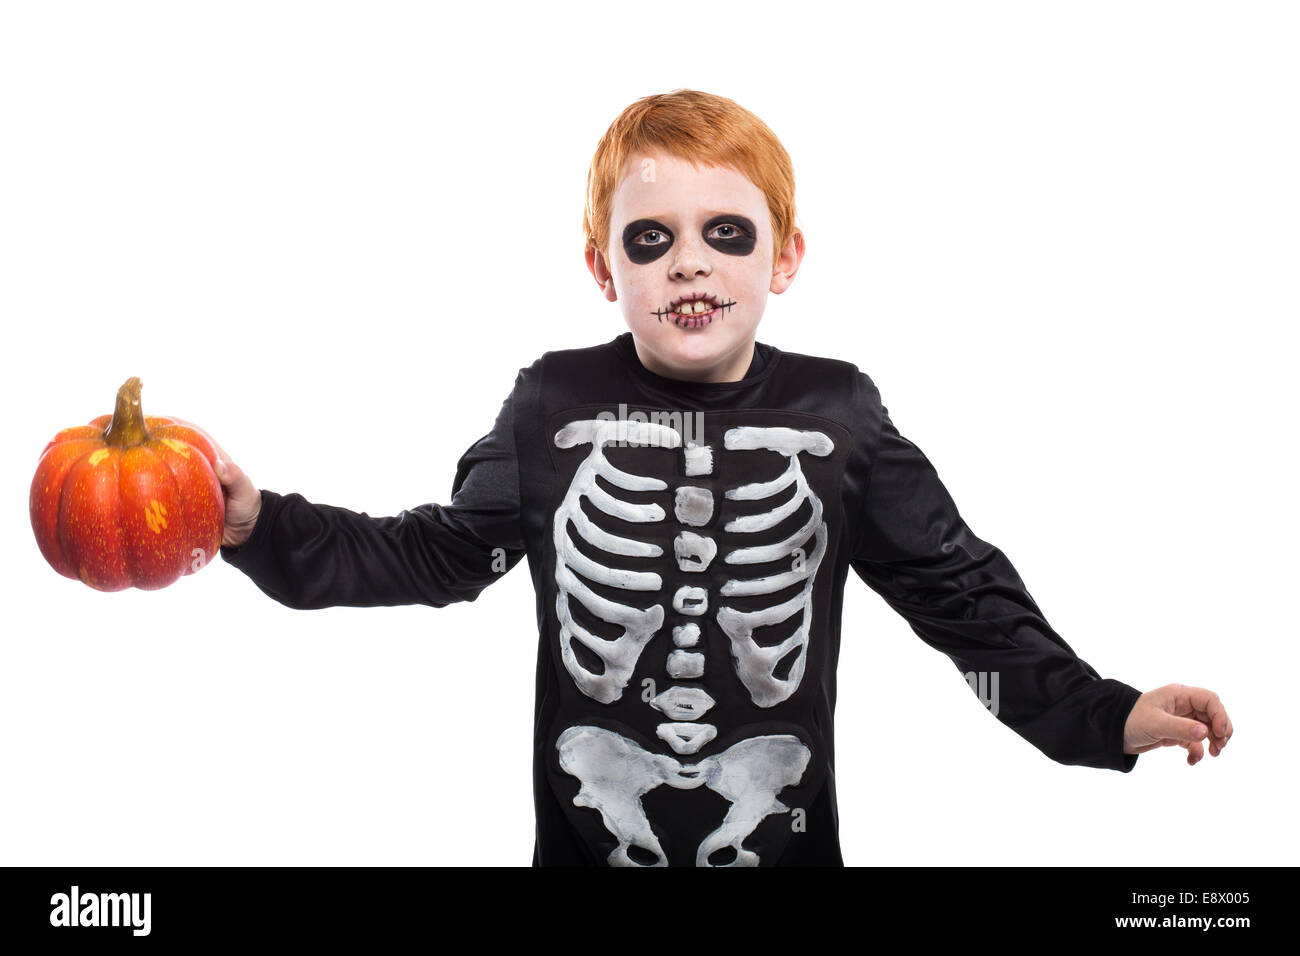 Porträt des kleinen roten Haaren jungen Halloween Skelett Kostüm trägt und hält Kürbis Stockfoto